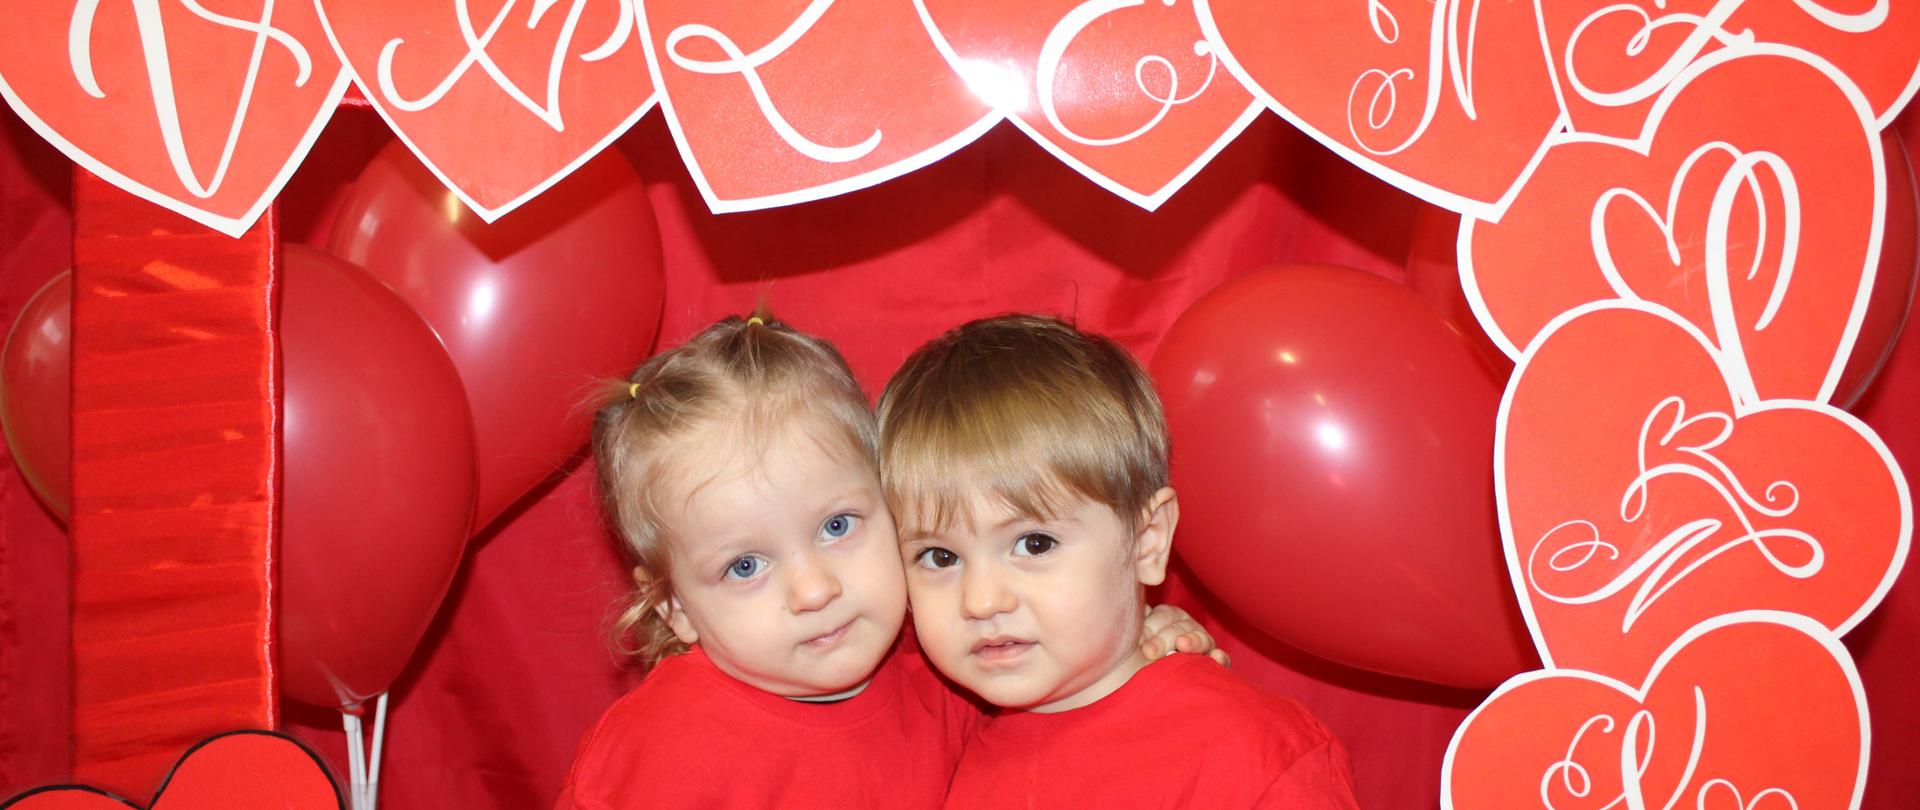 Na zdjęciu widać dójękę dzieci w czerwonej ramce, z napisem Walentynki, w koło rami przyczepione sa czerwone serduszka i wszystko jest na czerwonym tle.